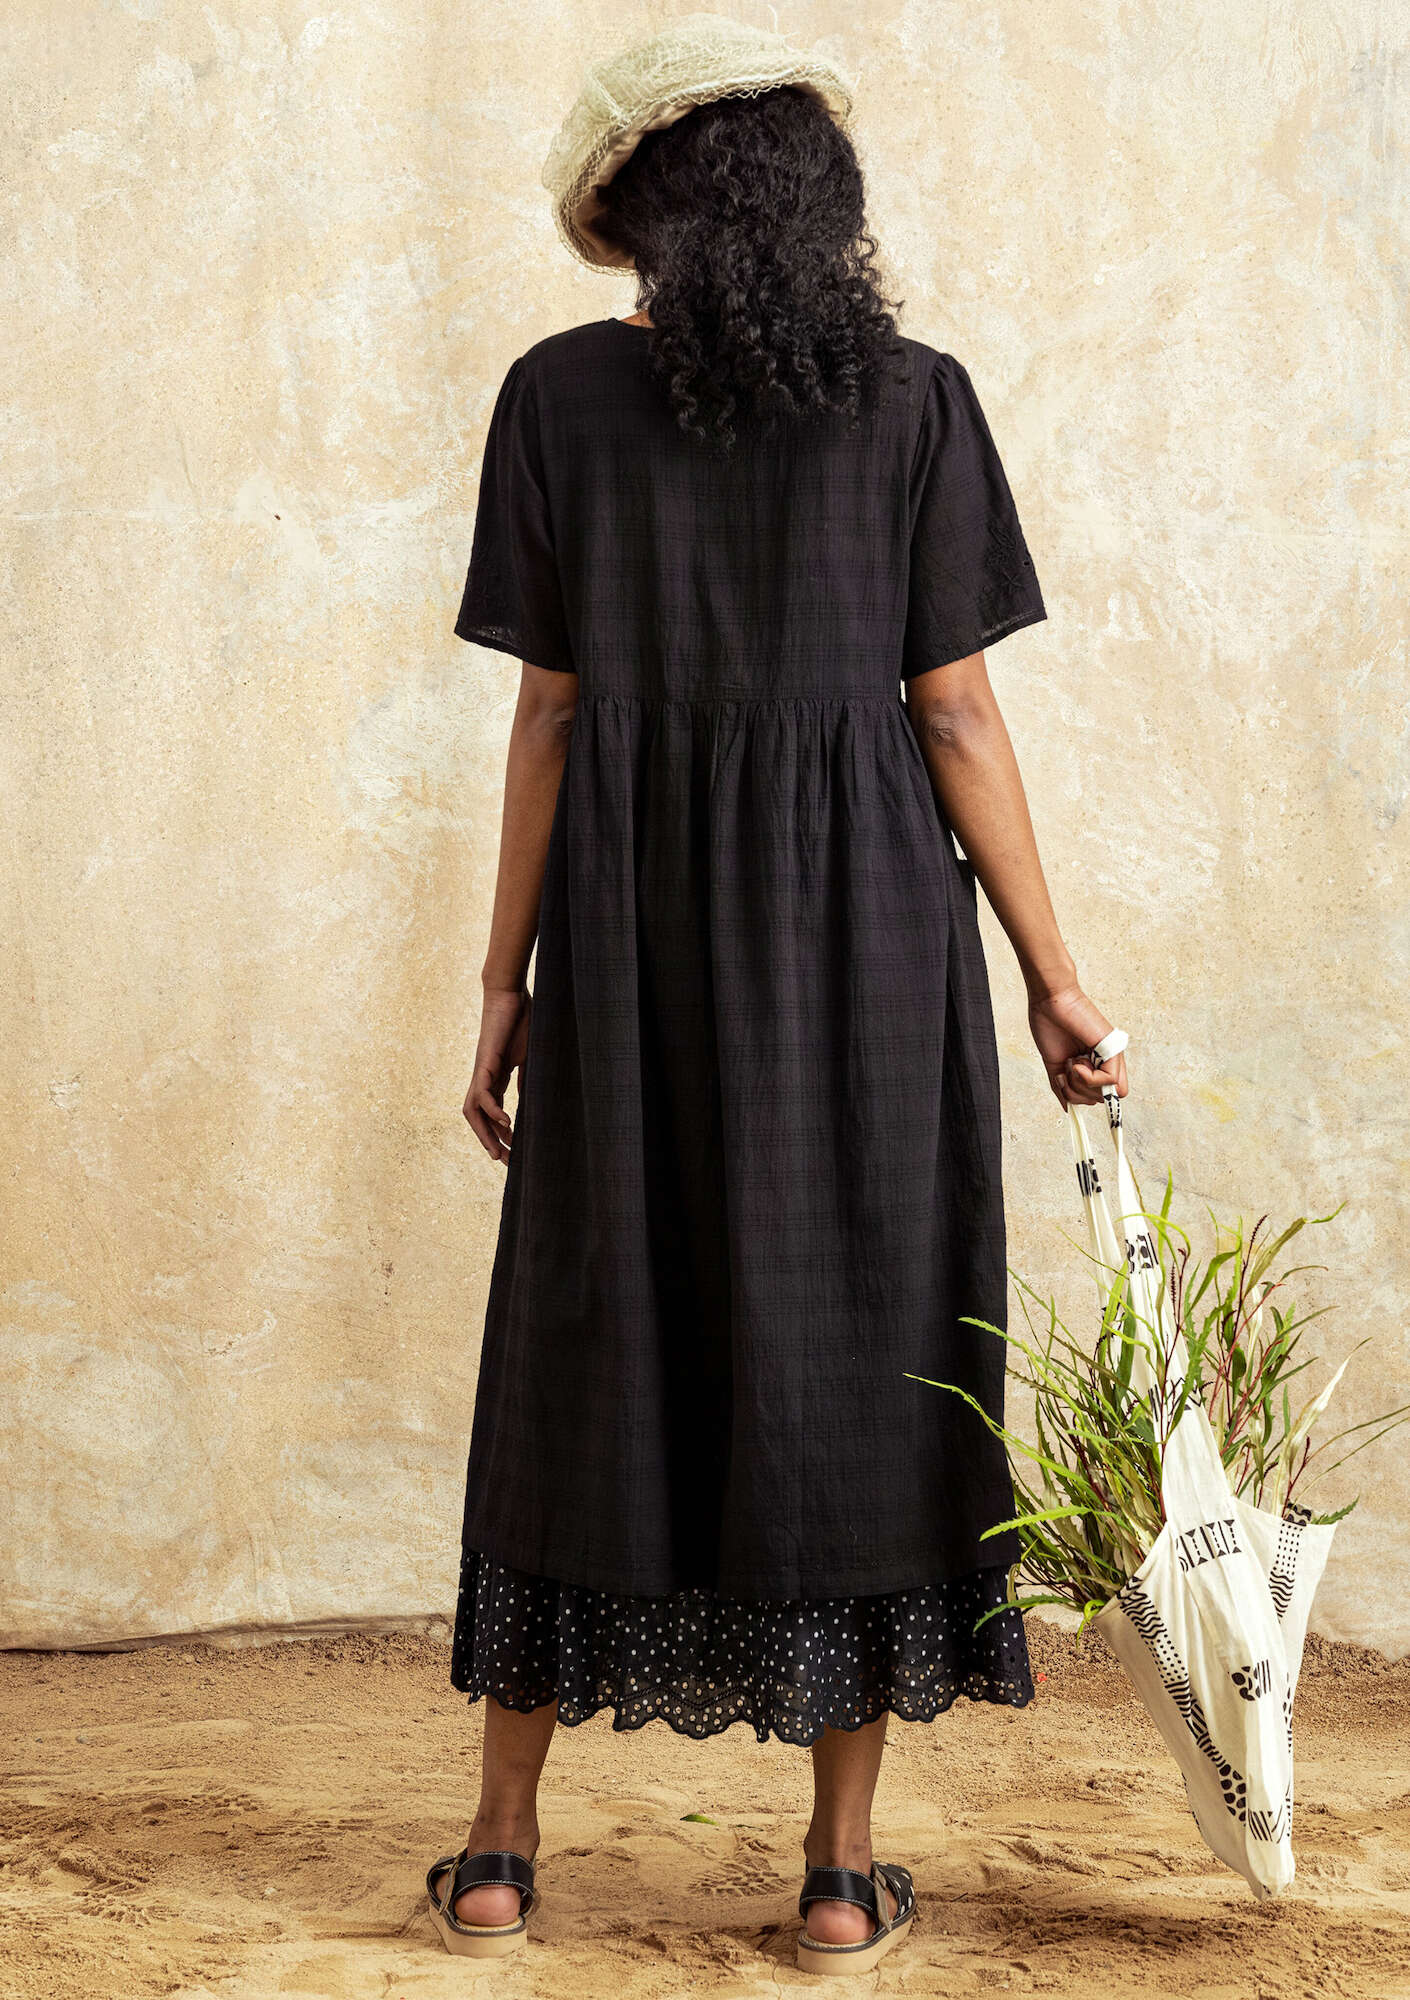 Vevd kjole «Tania» i økologisk bomull svart